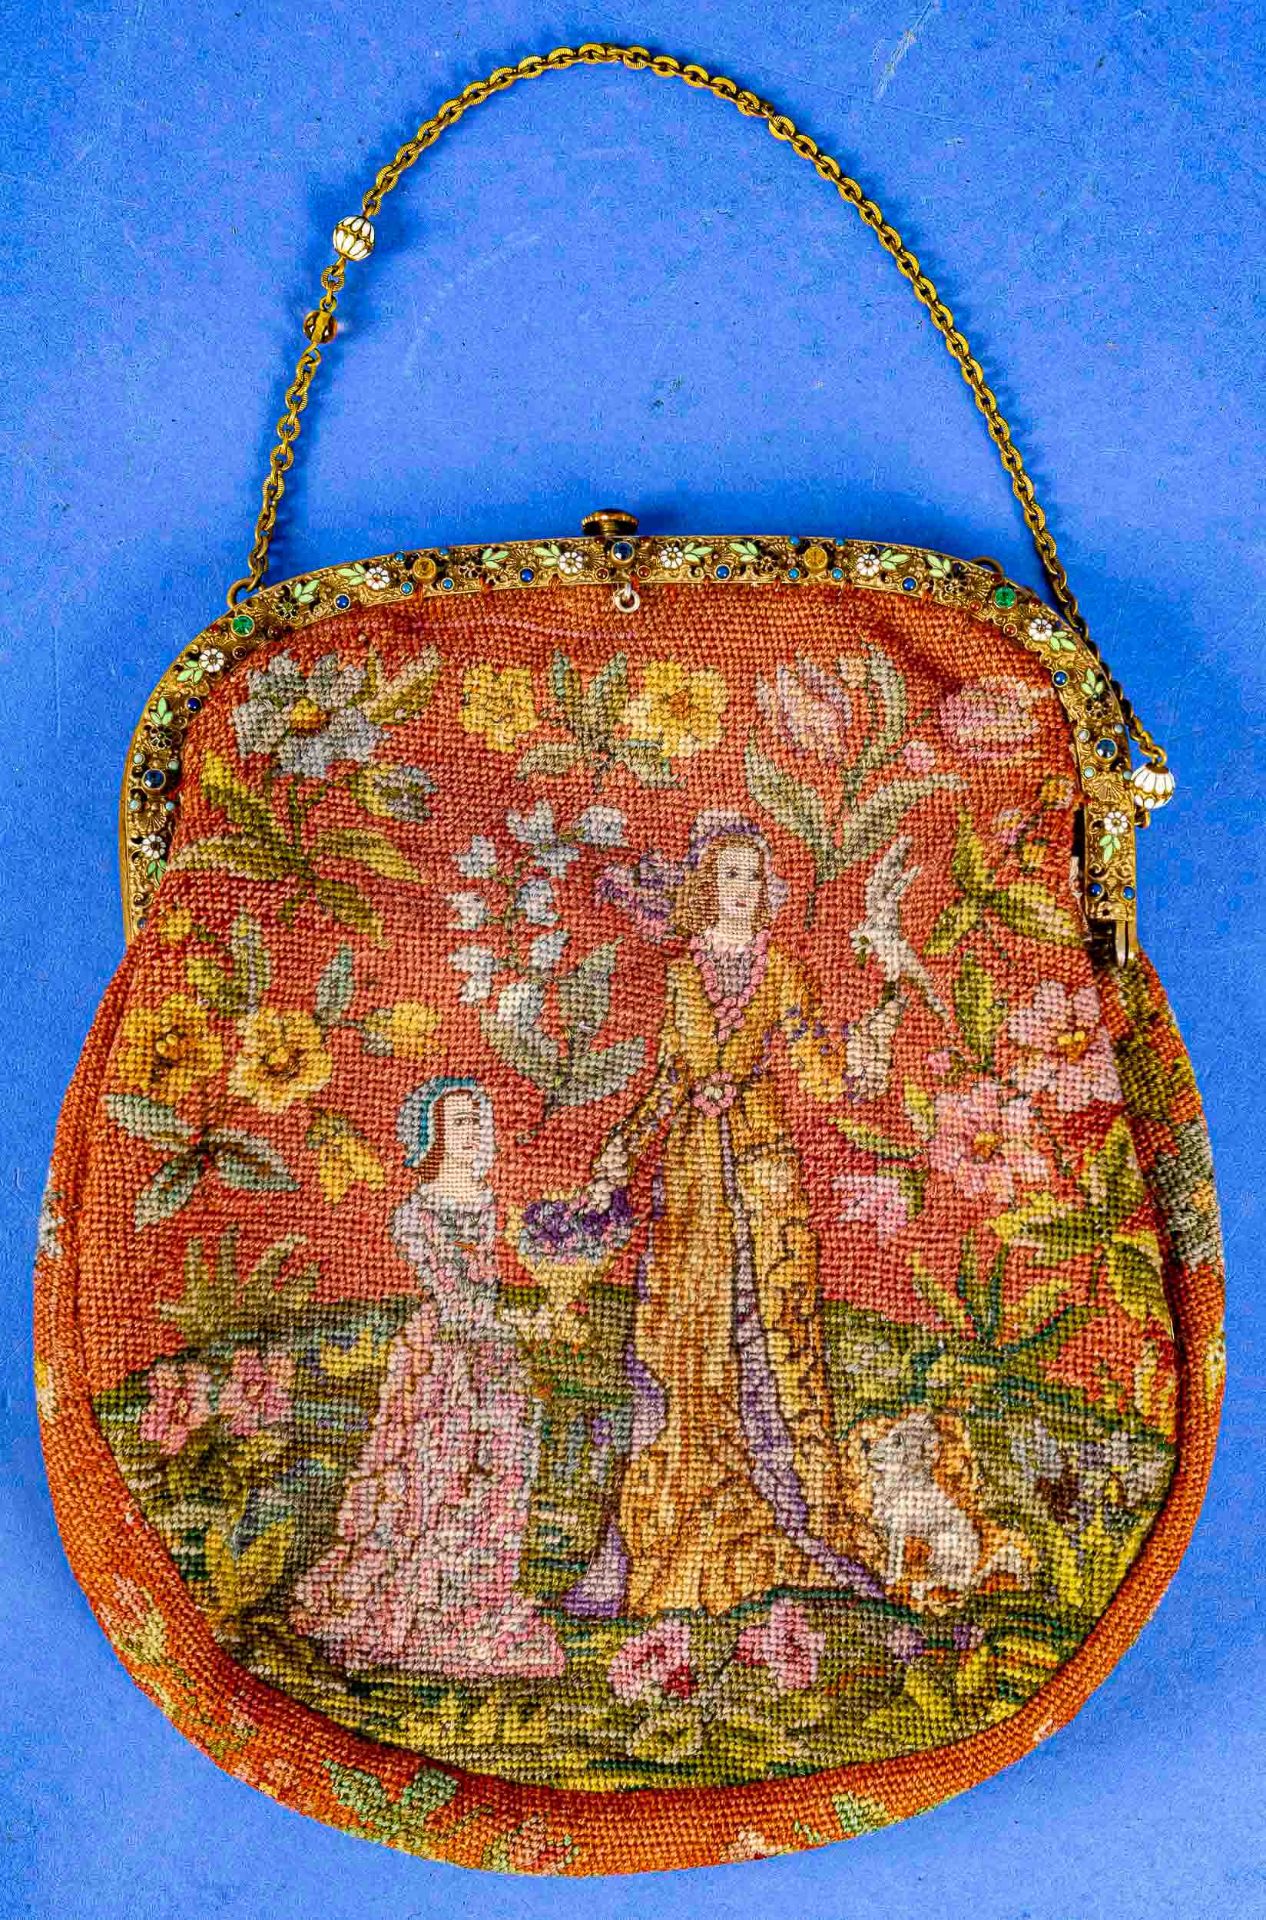 Antike Handtasche mit polychromer, filigraner Gobelin-Stickerei, die vergoldete Metall-Montur aufwä